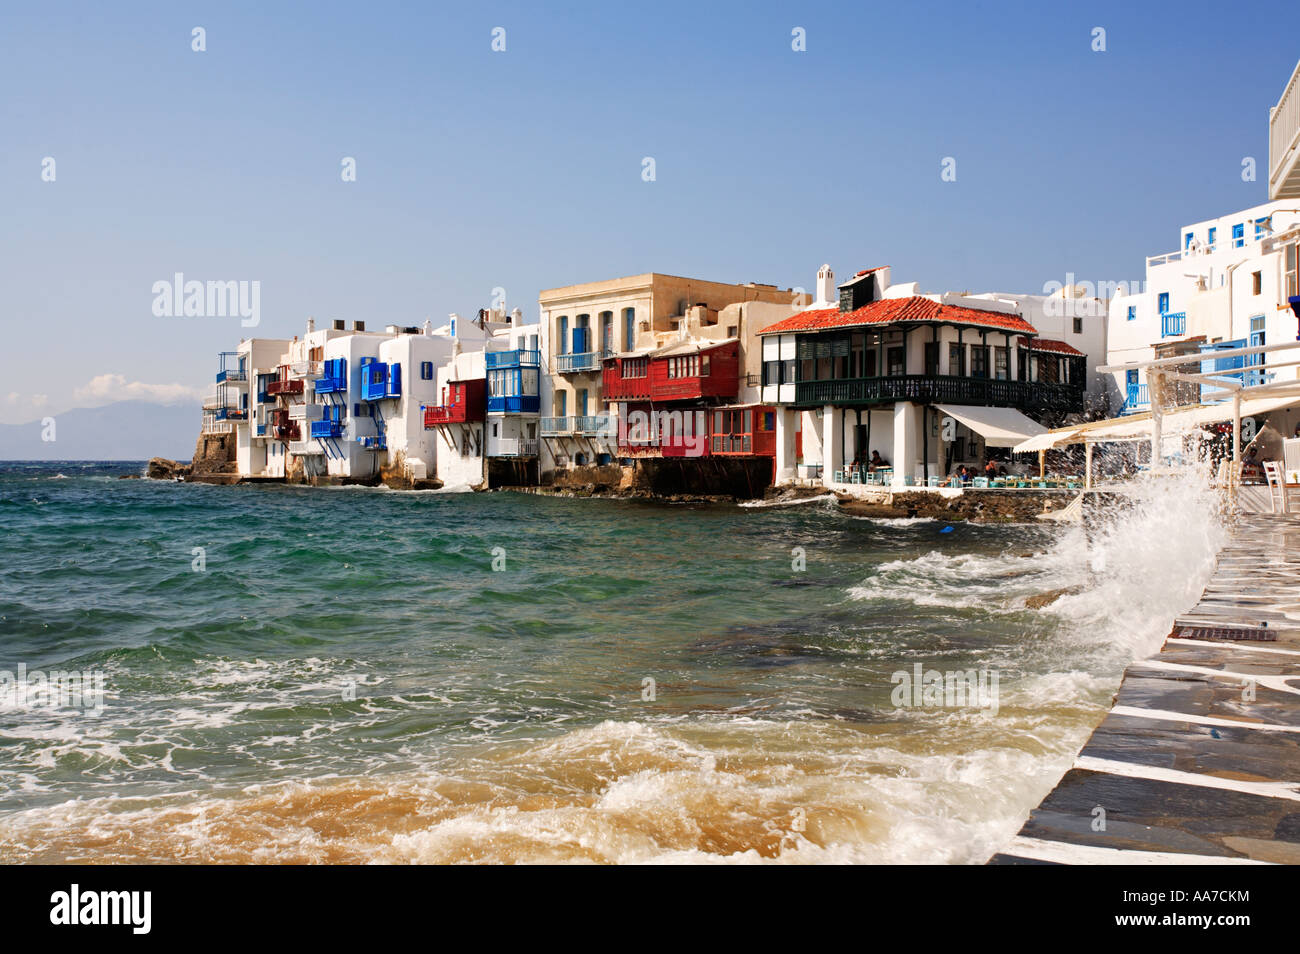 La piccola Venezia Mykonos isola del Mar Egeo cicladi grecia UE Unione europea EUROPA Foto Stock